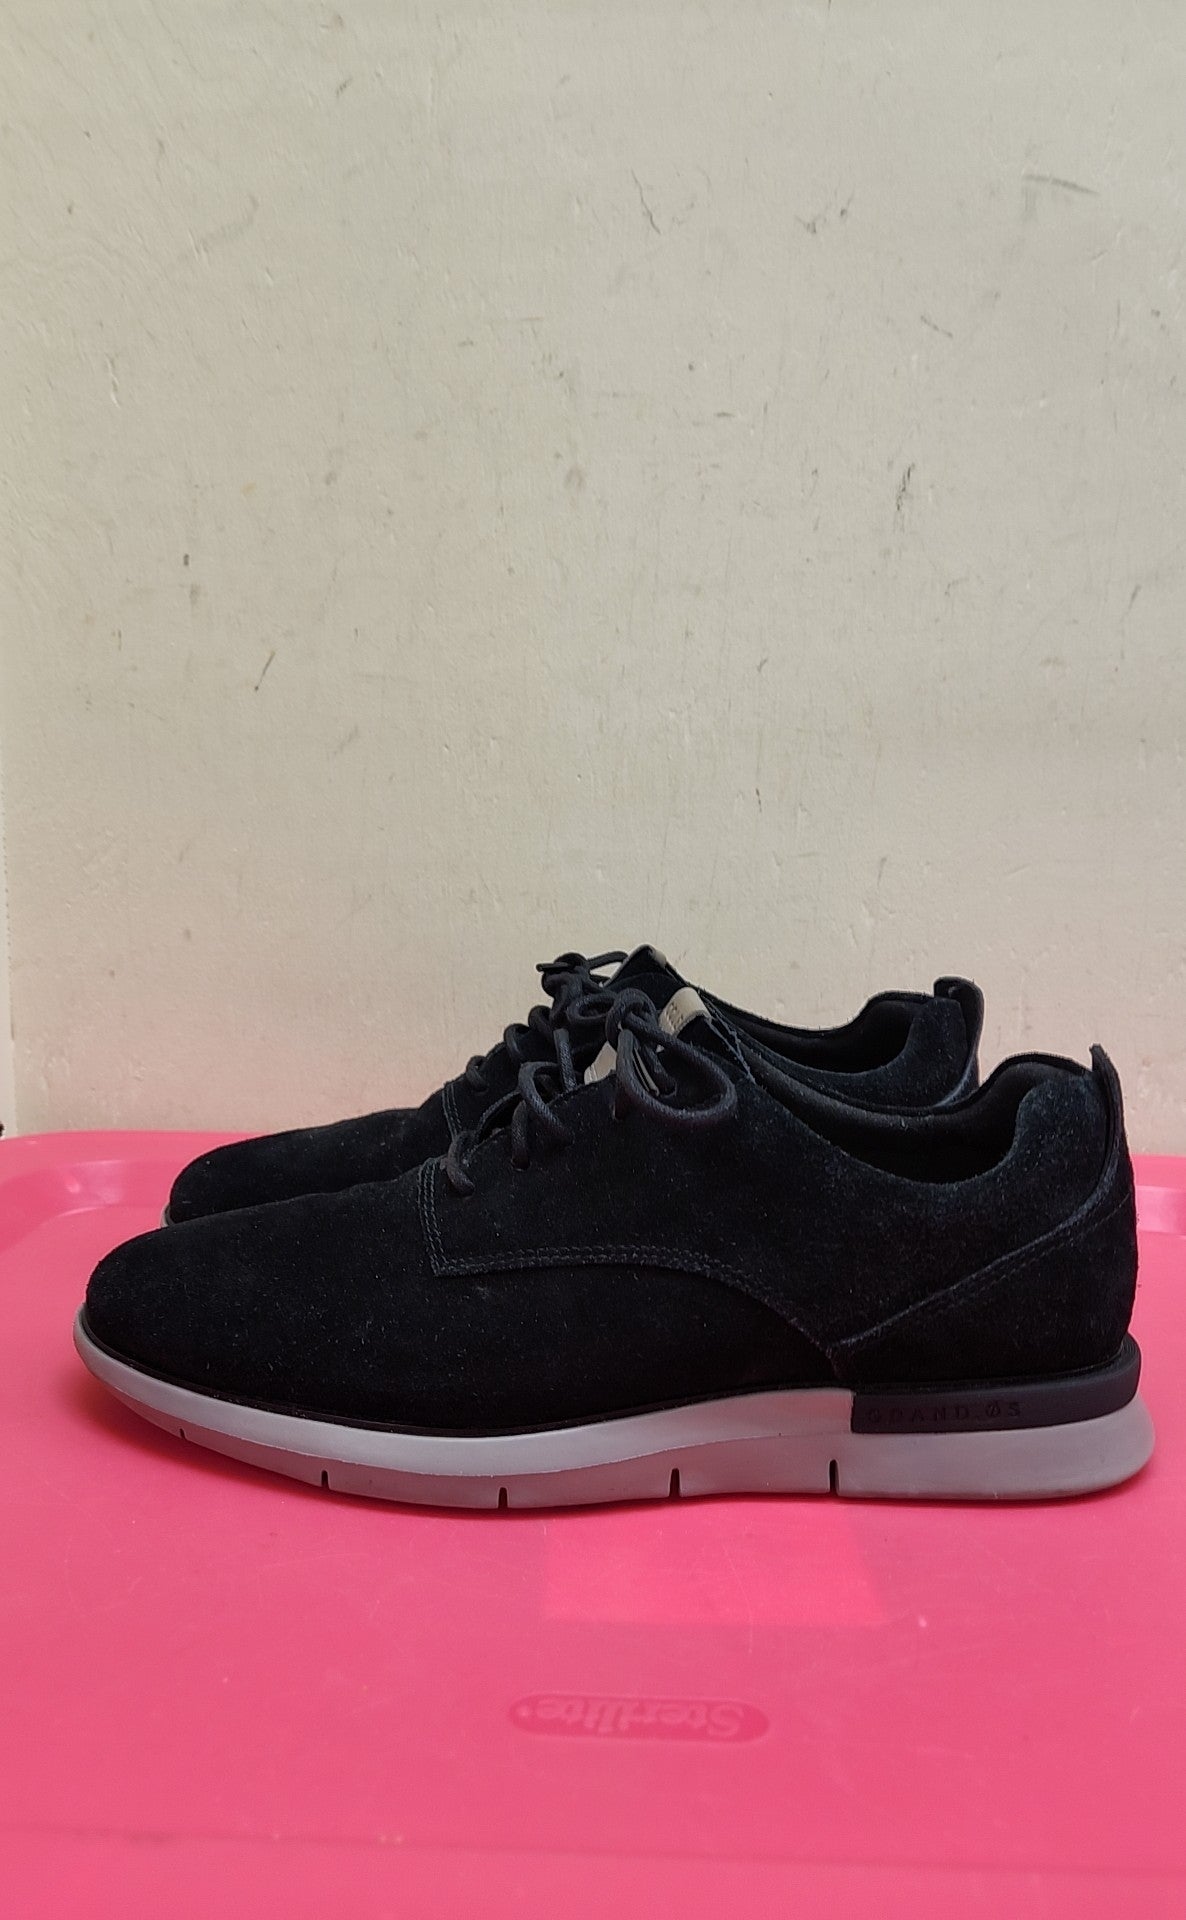 Cole Haan Men's Size 9 Black Shoes